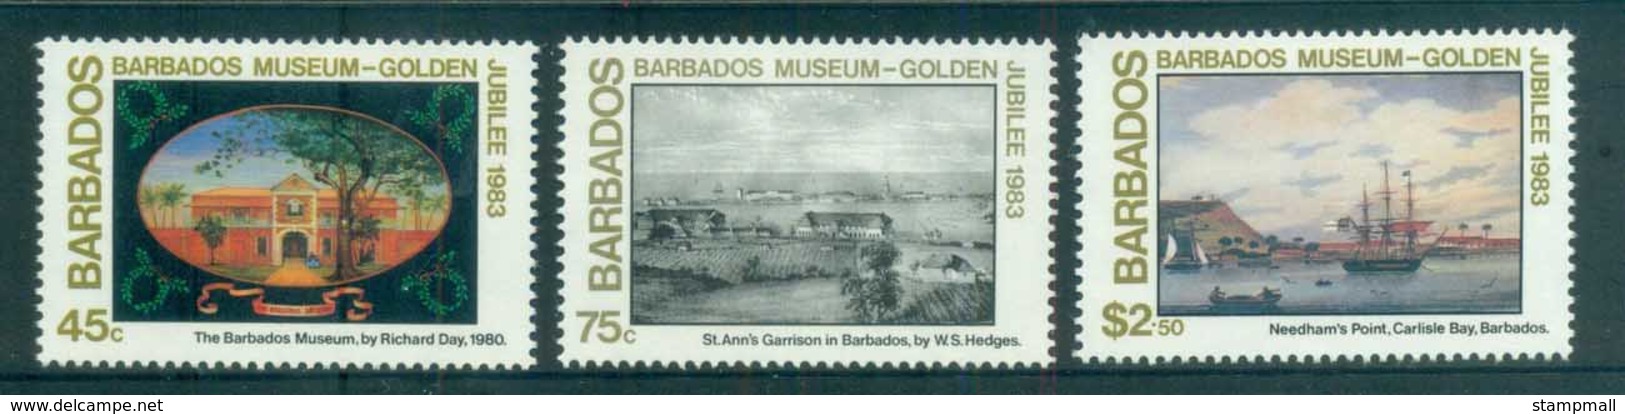 Barbados 1983 Barbados Museum Paintings MLH Lot80824 - Barbados (1966-...)